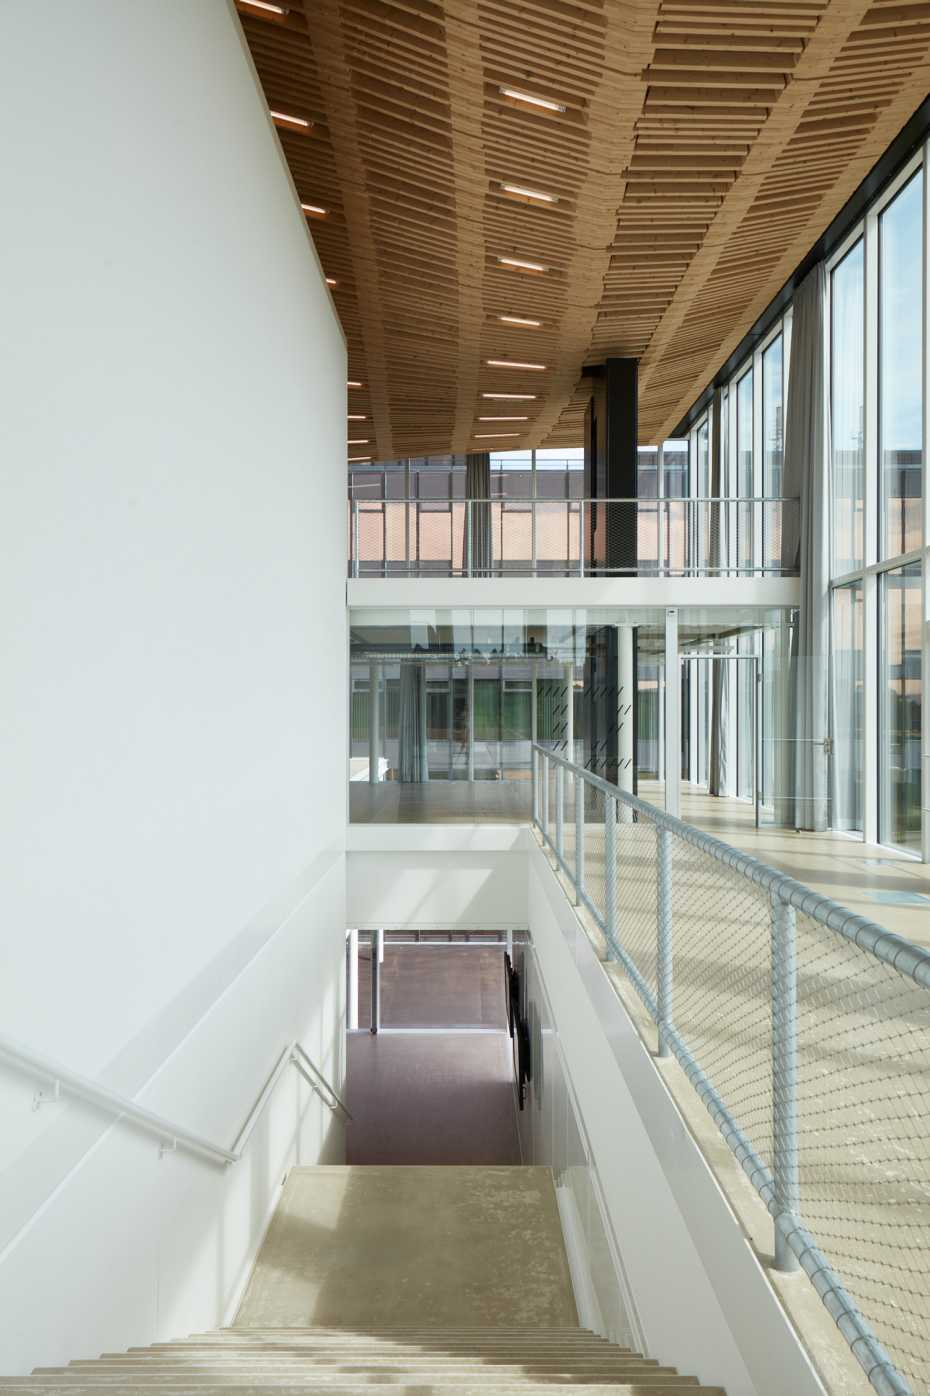 Result – ITA Institute of Technology in Architecture | ETH Zurich